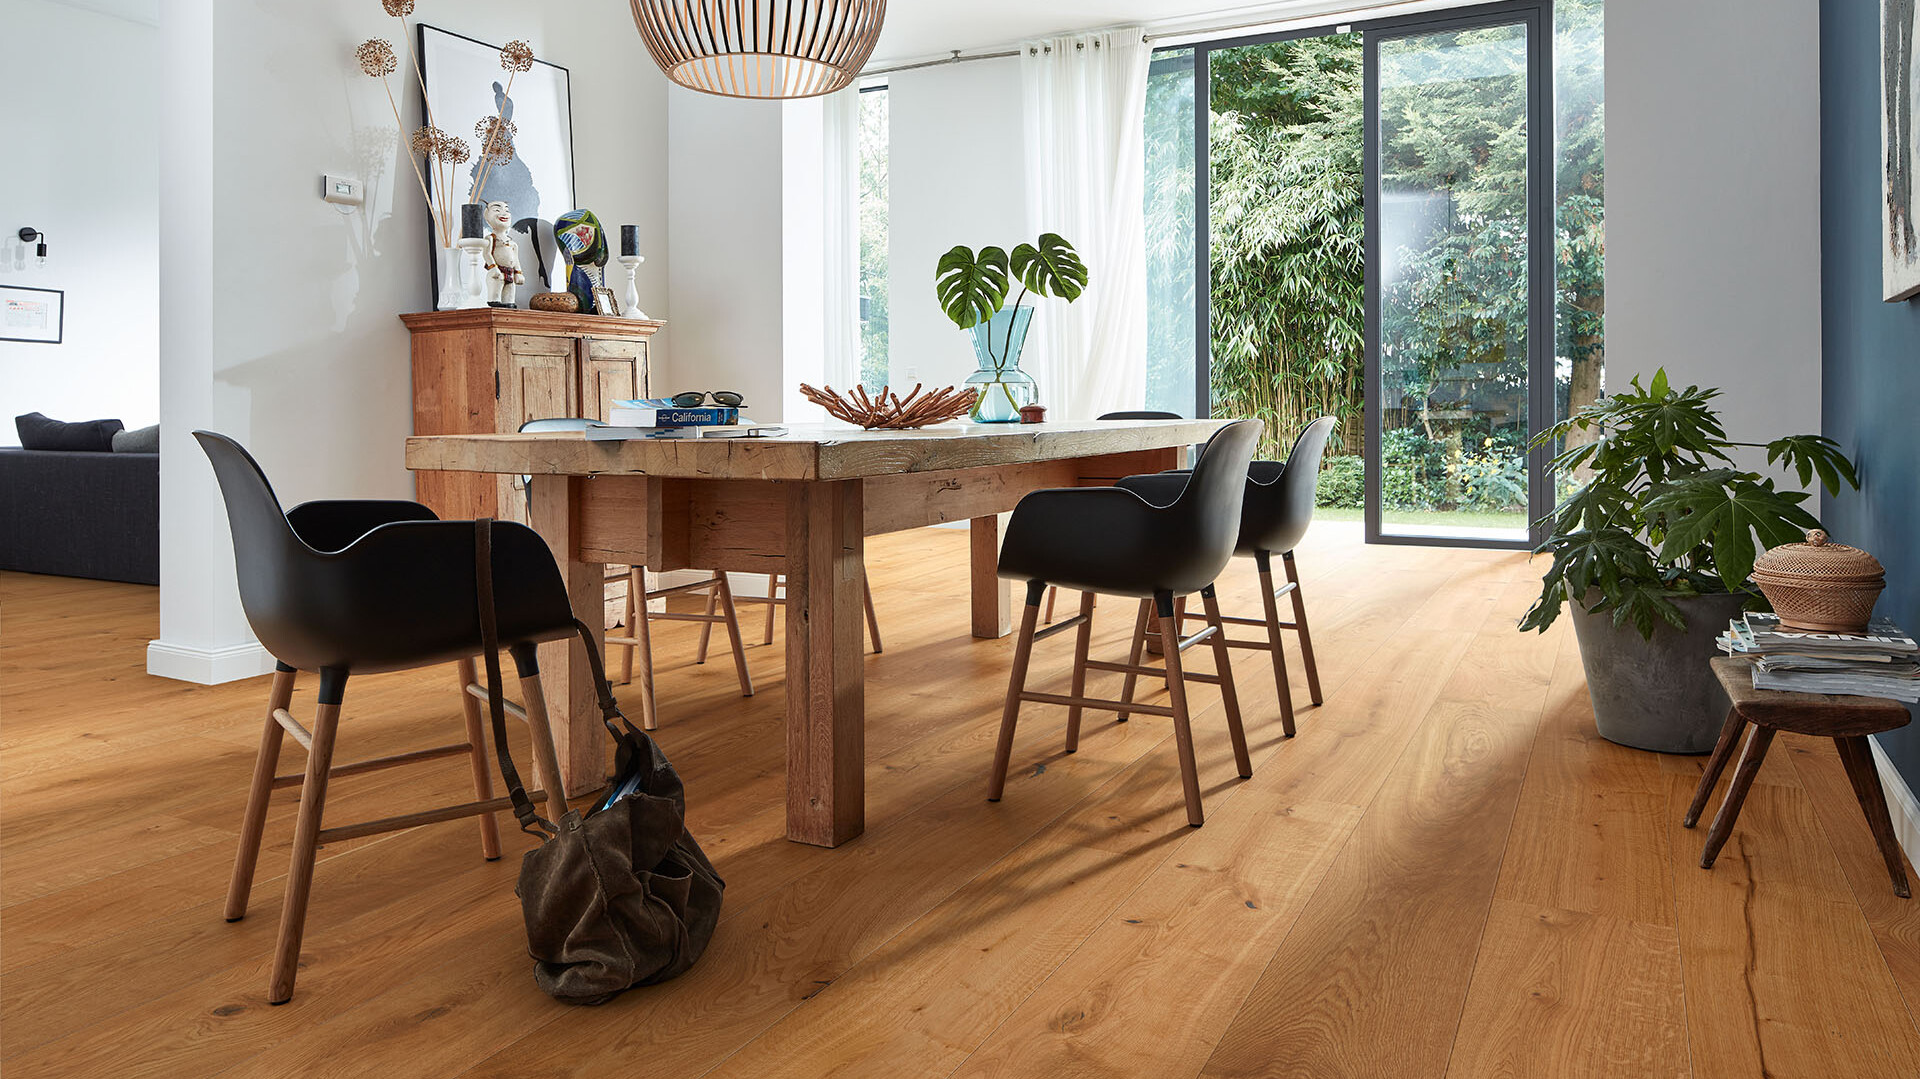 Lindura-Holzboden als Parkett Alternative unter einem Esstisch